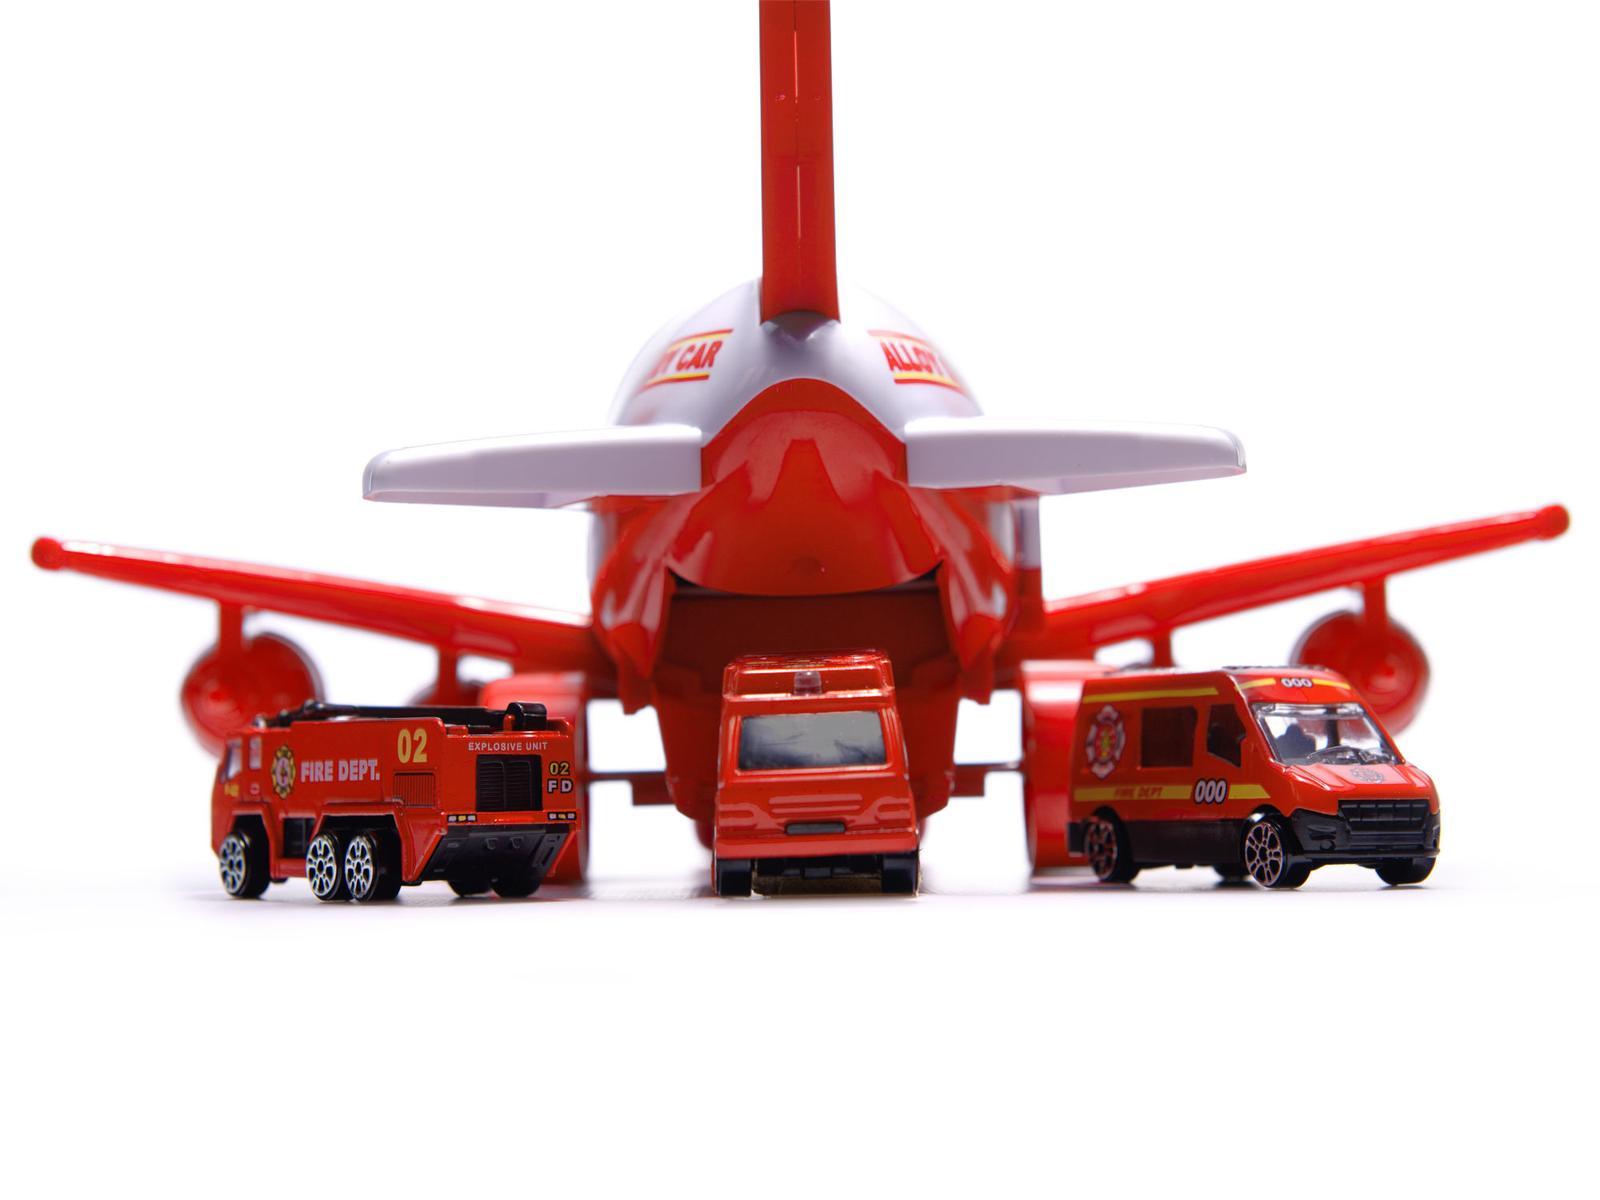 Transporter samolot + 3 pojazdy straż pożarna zabawka dla dzieci czerwona 41,5x31,5x14 cm nr. 14